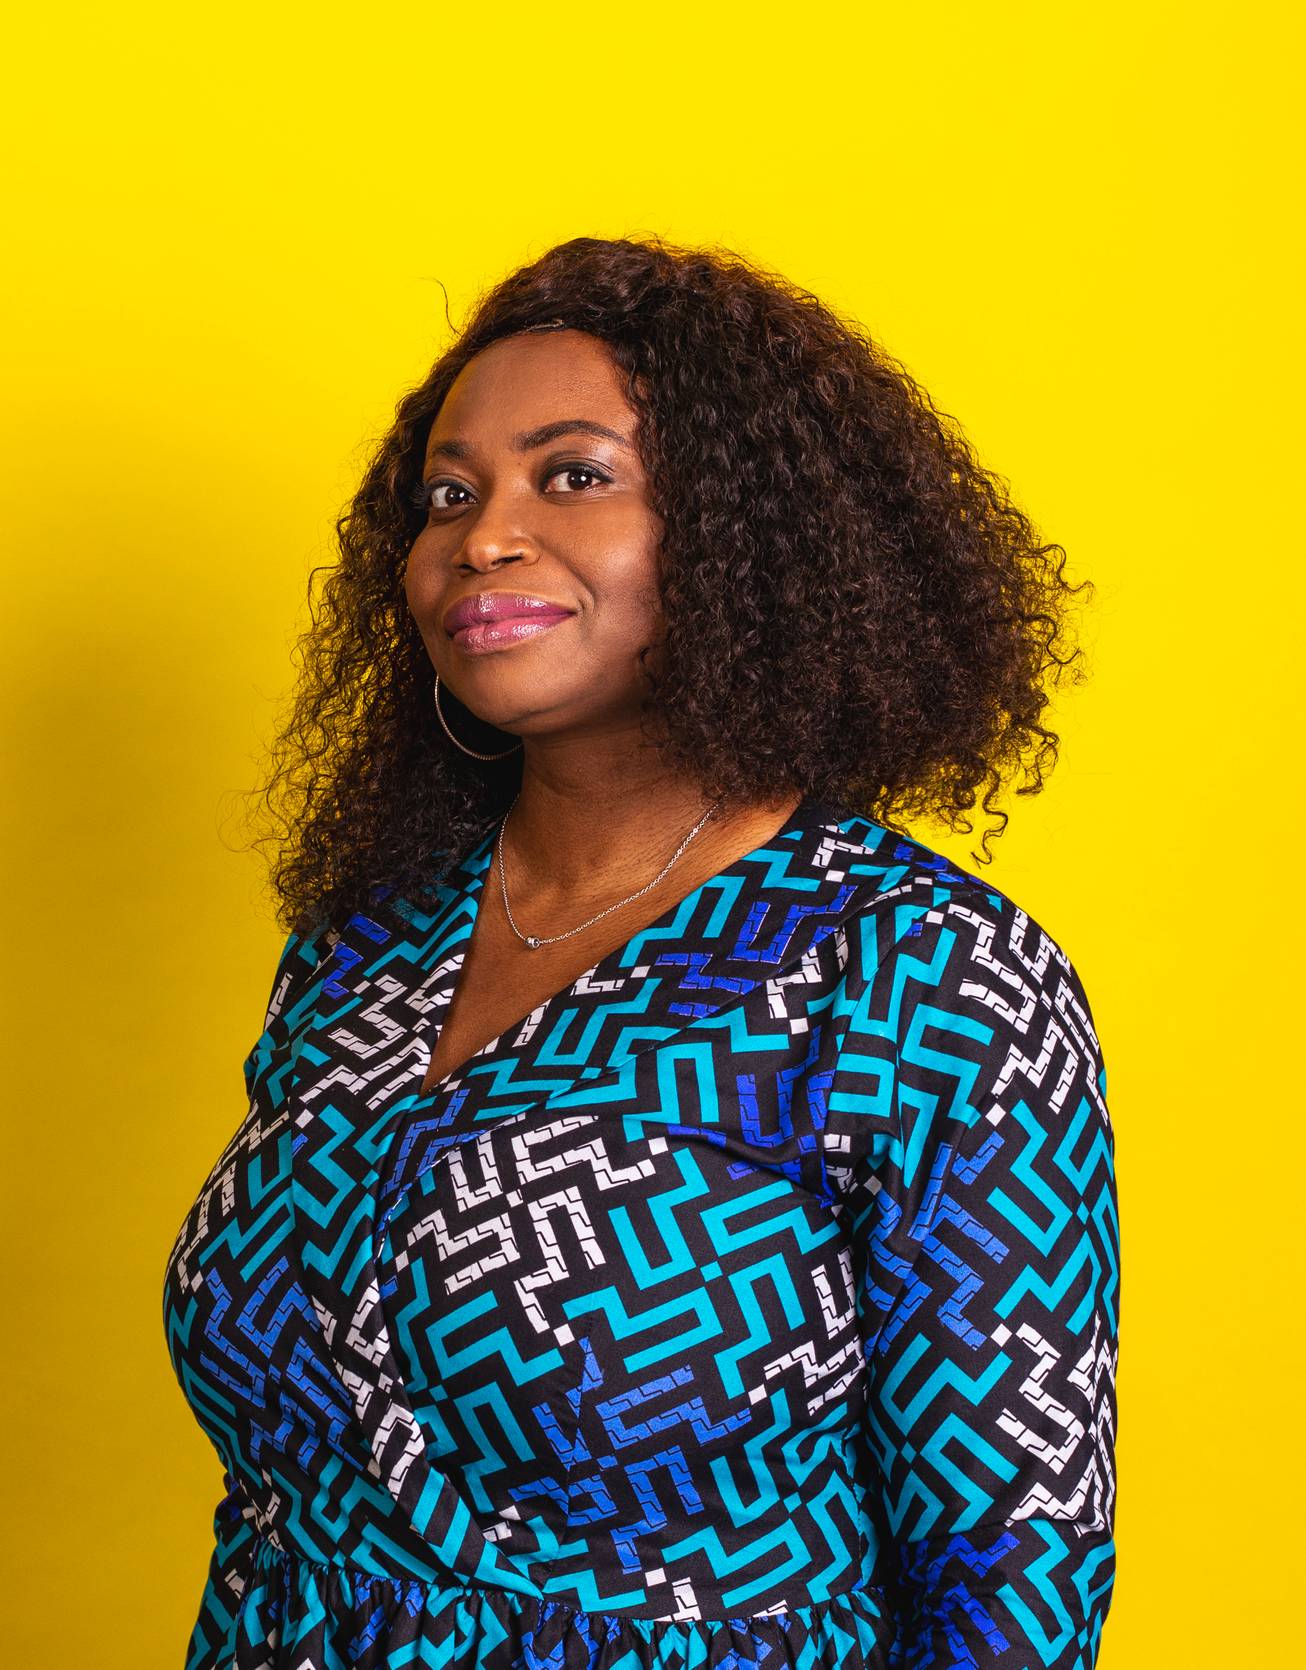 Adetola Adekunle profile photo on yellow background